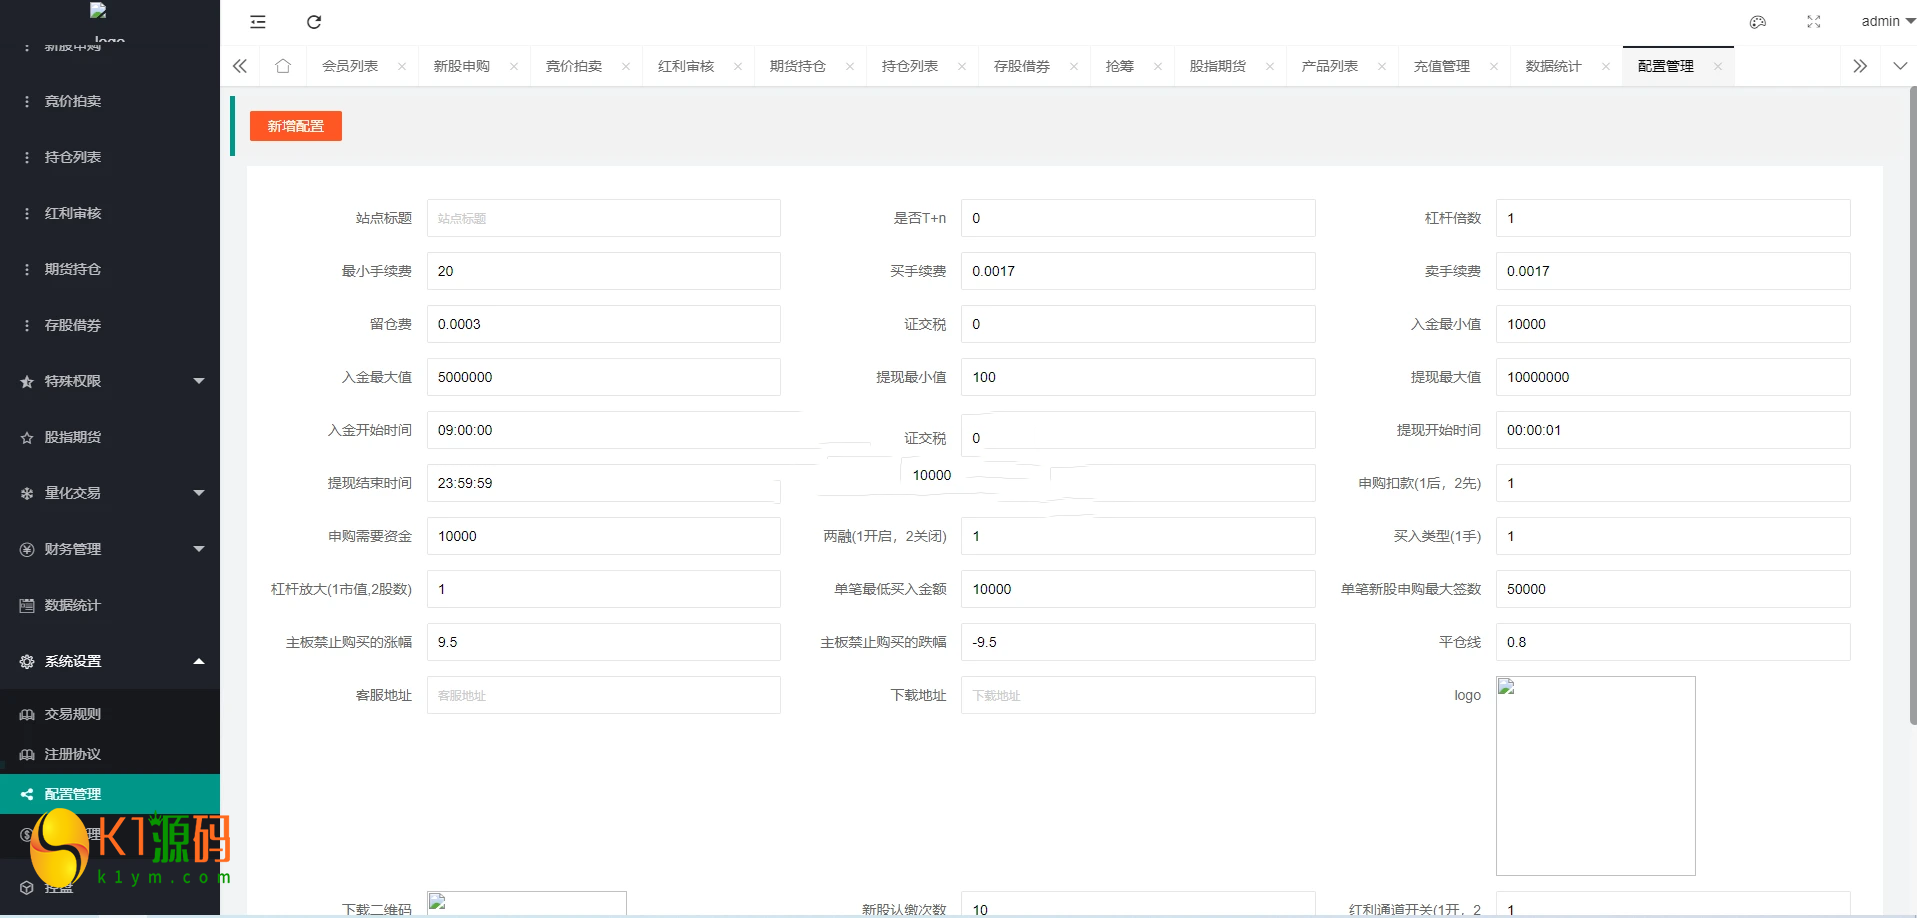 新版台湾股票系统/股票配资源码/申购折扣交易系统插图10